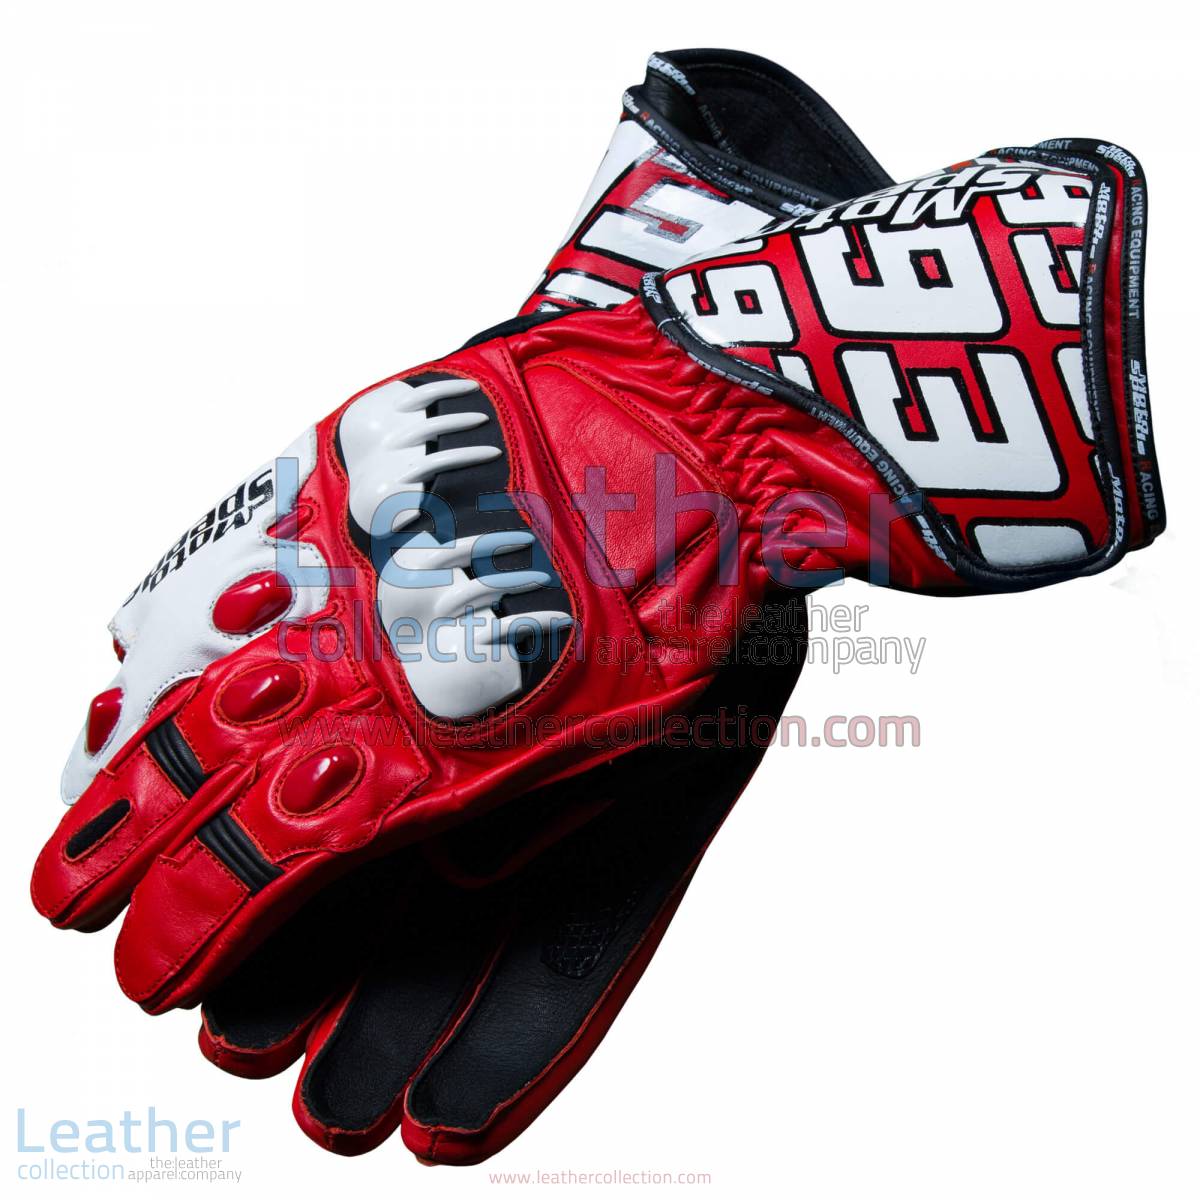 Honda Repsol 2013 Marquez Leather Gloves